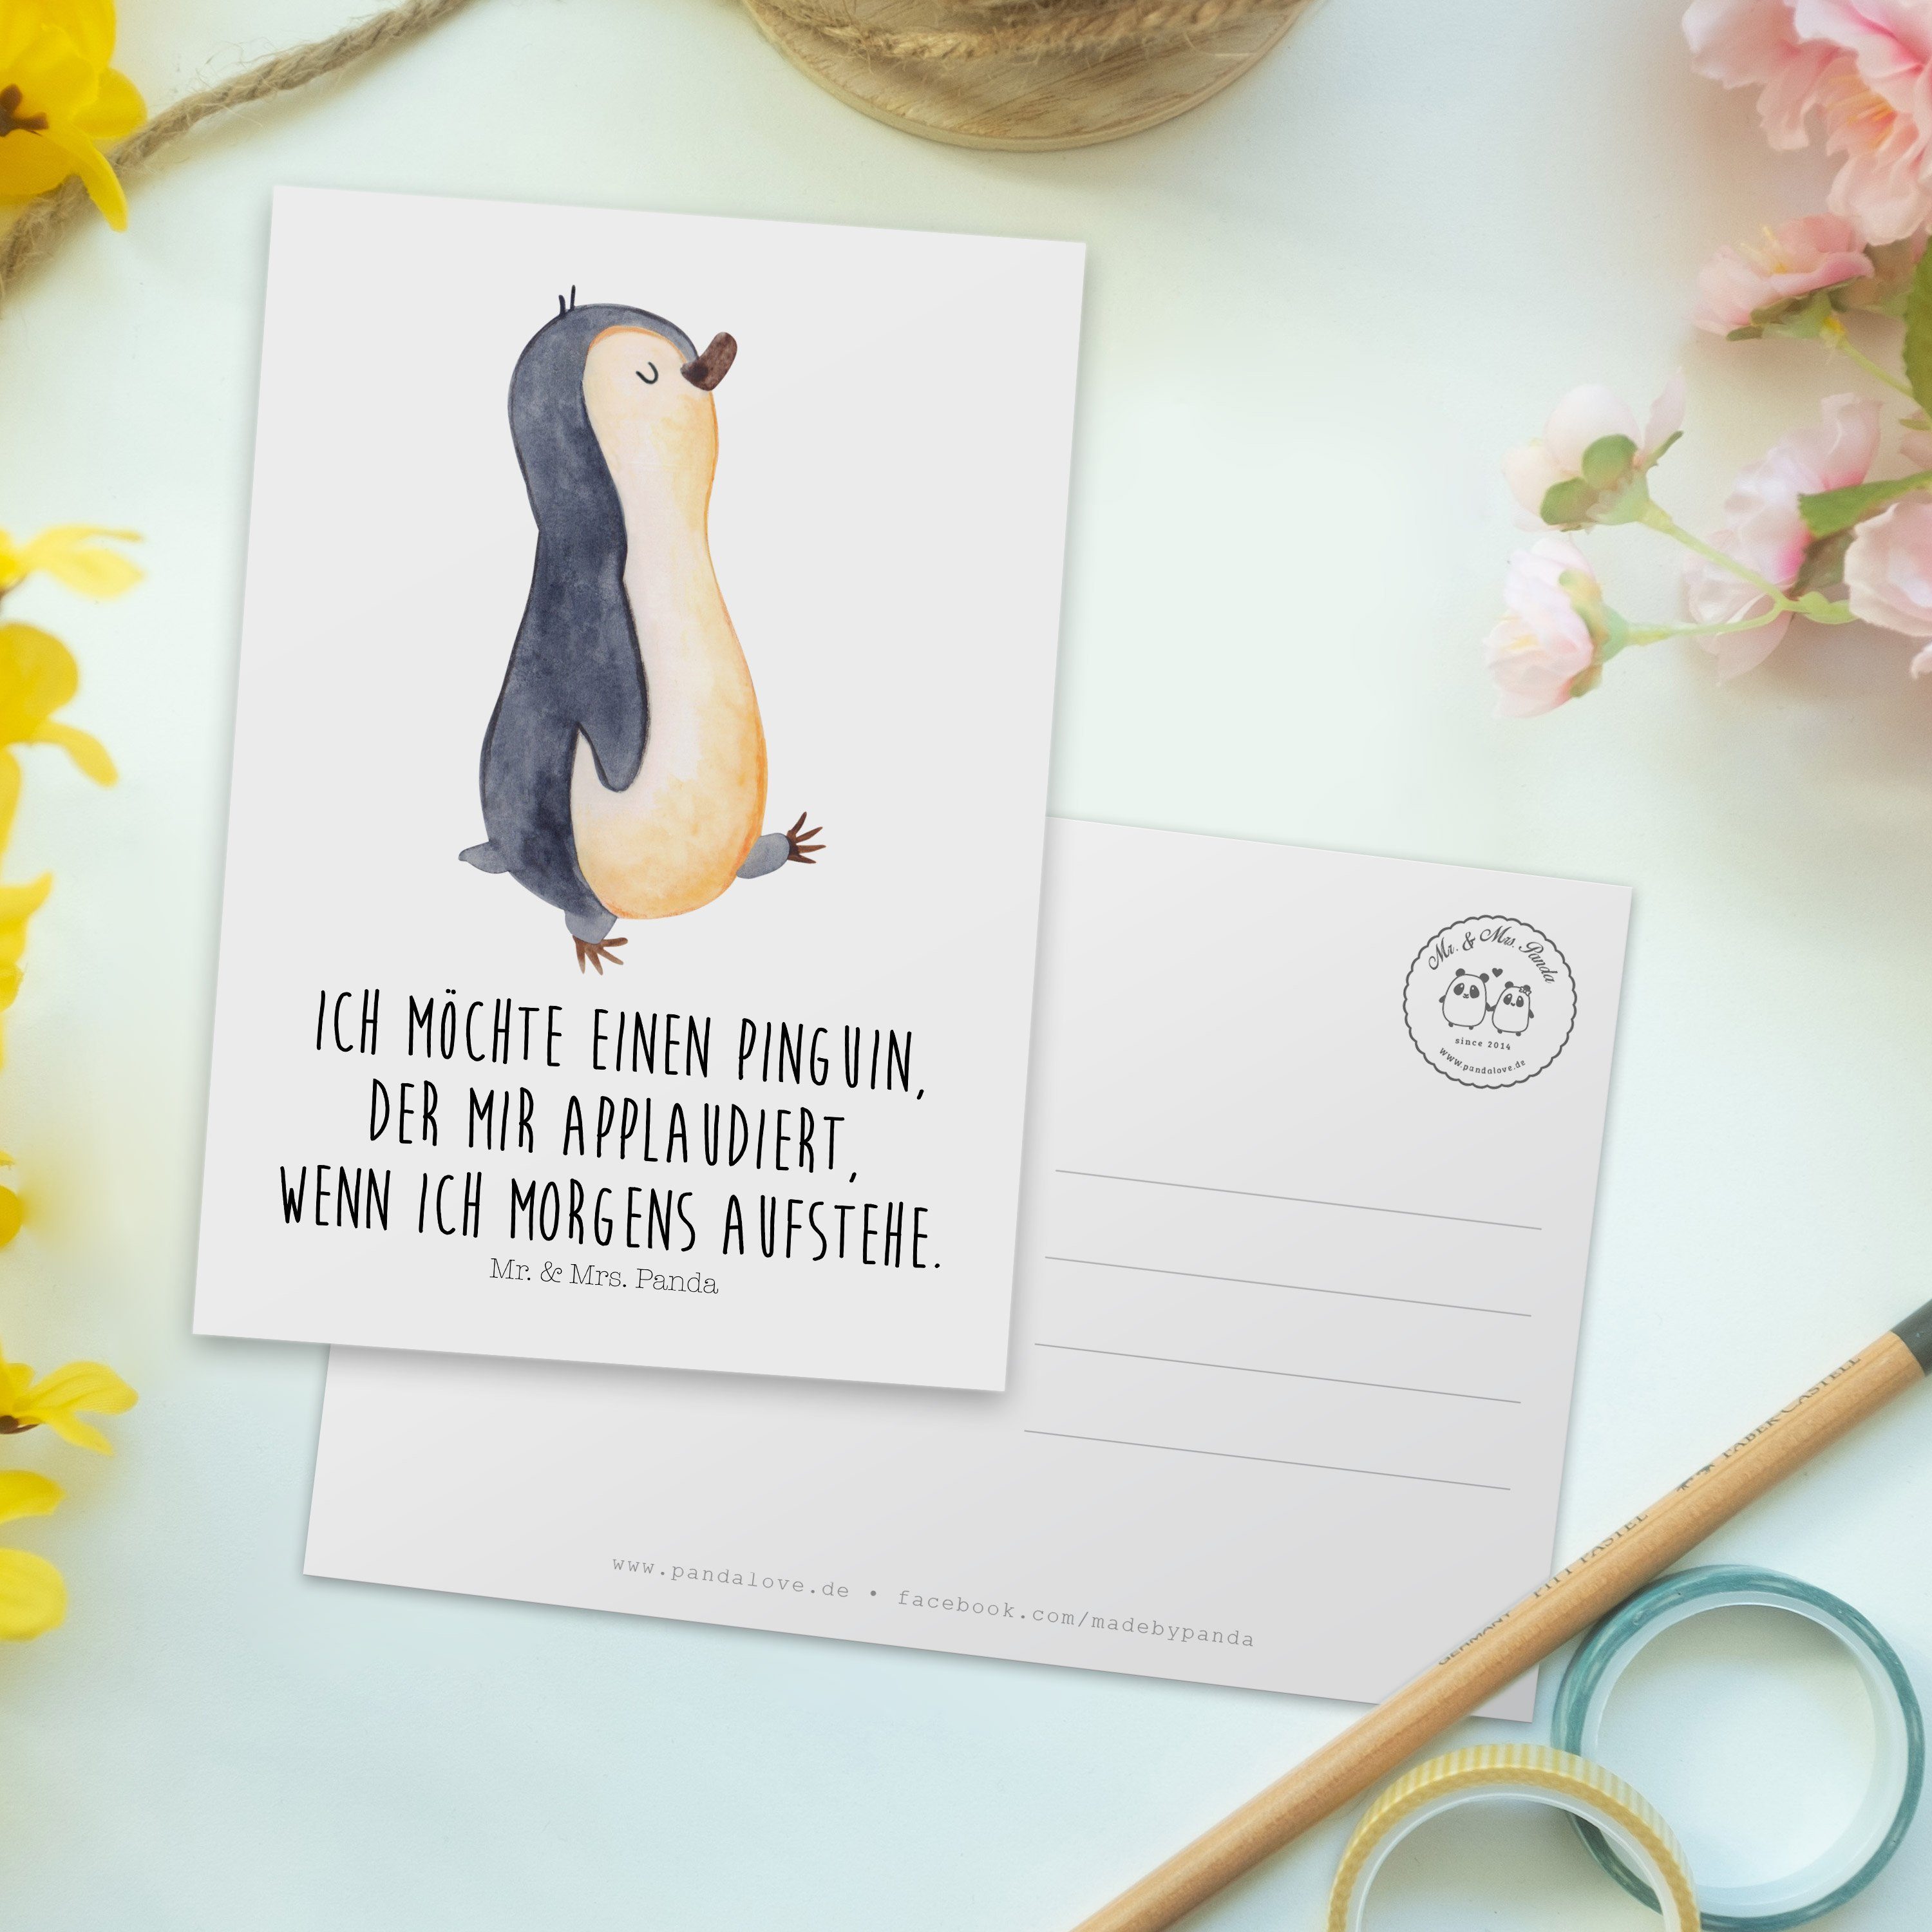 Mr. & Mrs. Familie, Pinguine Geschenk, Grußkarte, Weiß marschierend - Pinguin - Panda Postkarte